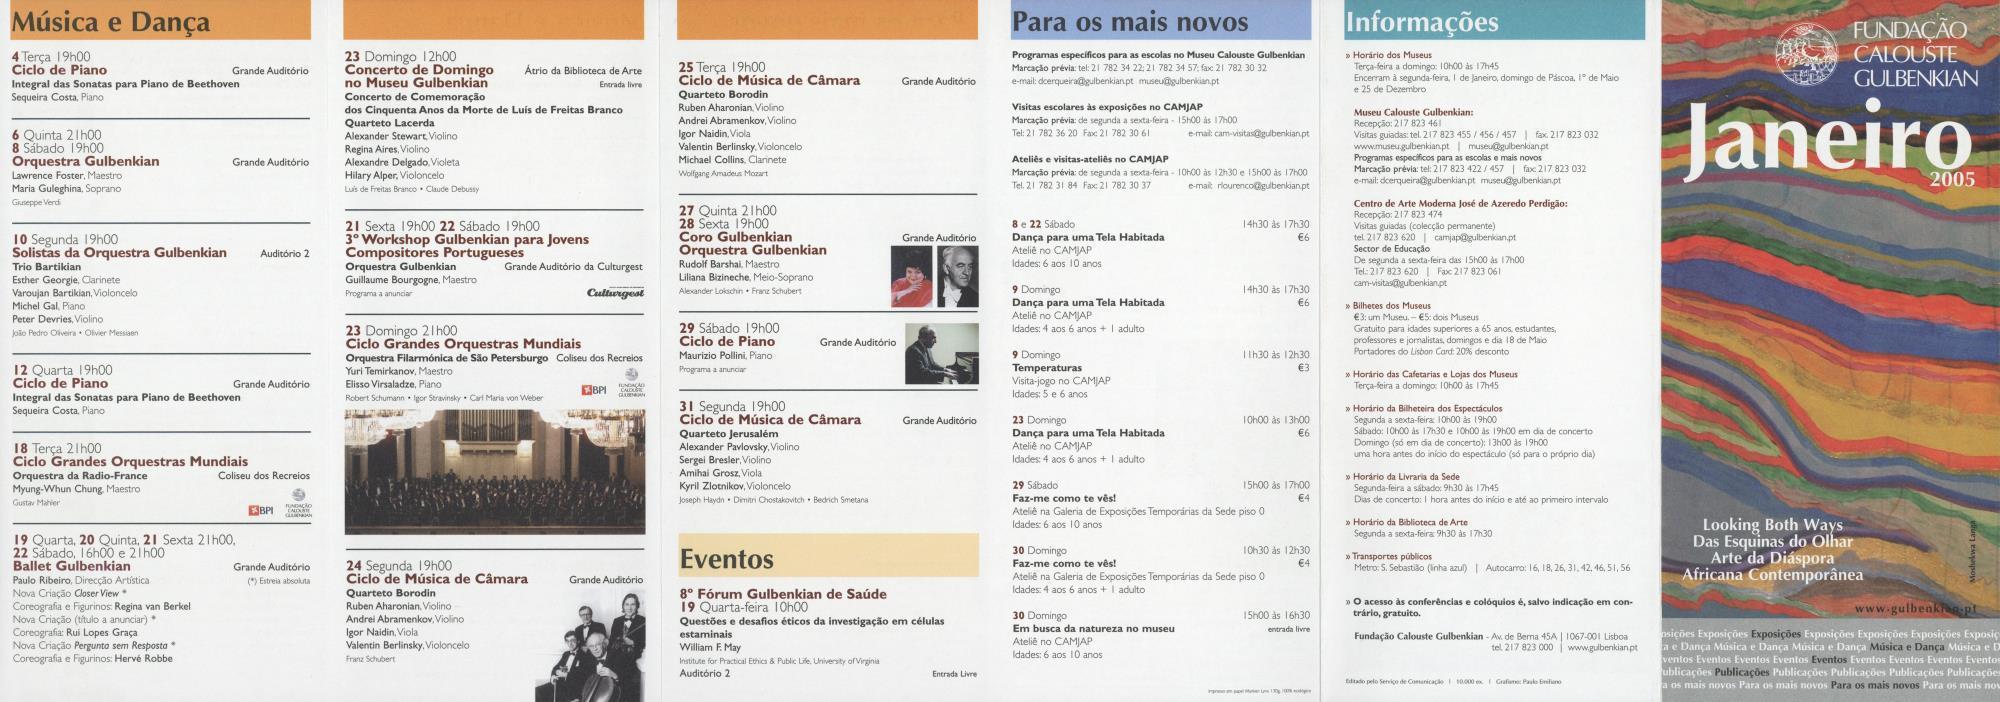 Fundação Calouste Gulbenkian. Janeiro 2005